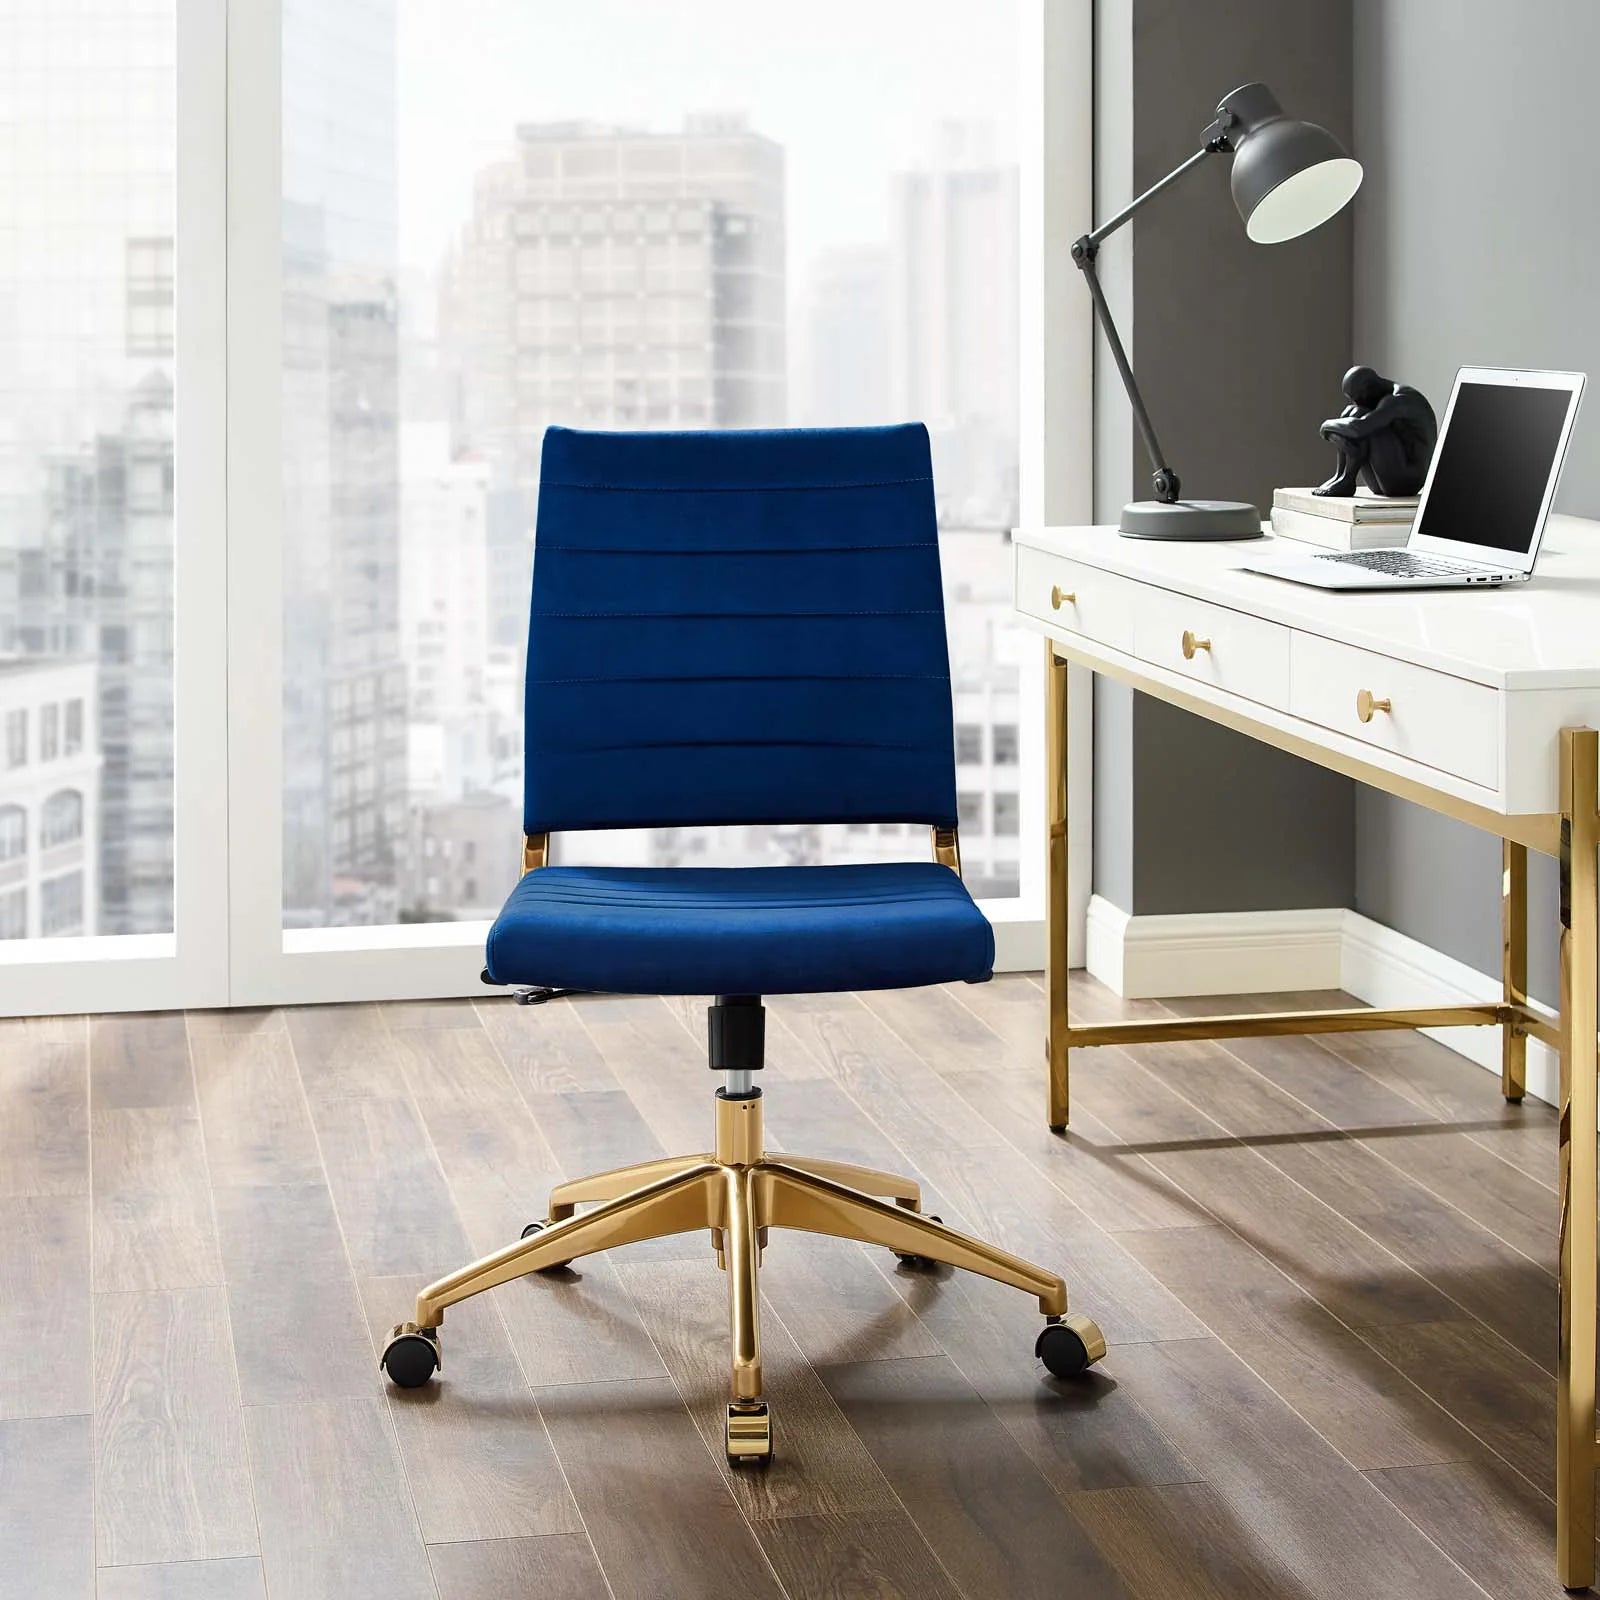 Silla para escritorio moderna sin descansabrazos azul con dorado Zoa de frente en una oficina.